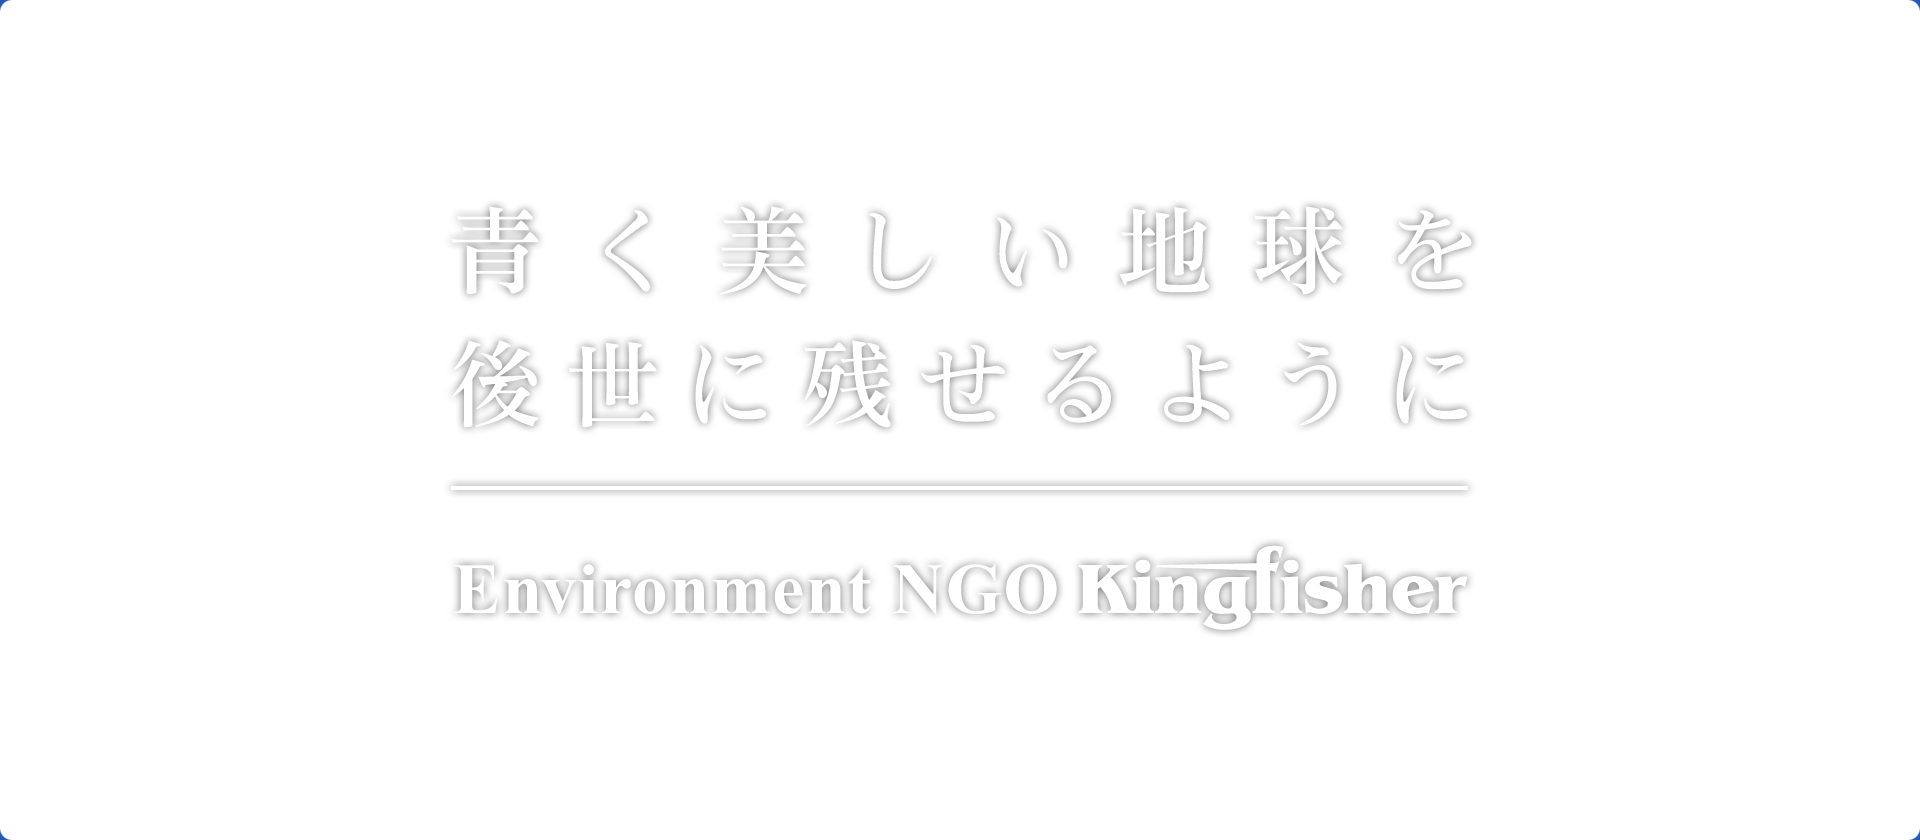 青く美しい地球を後世にのこせるように　Environment NGO Kingfisher